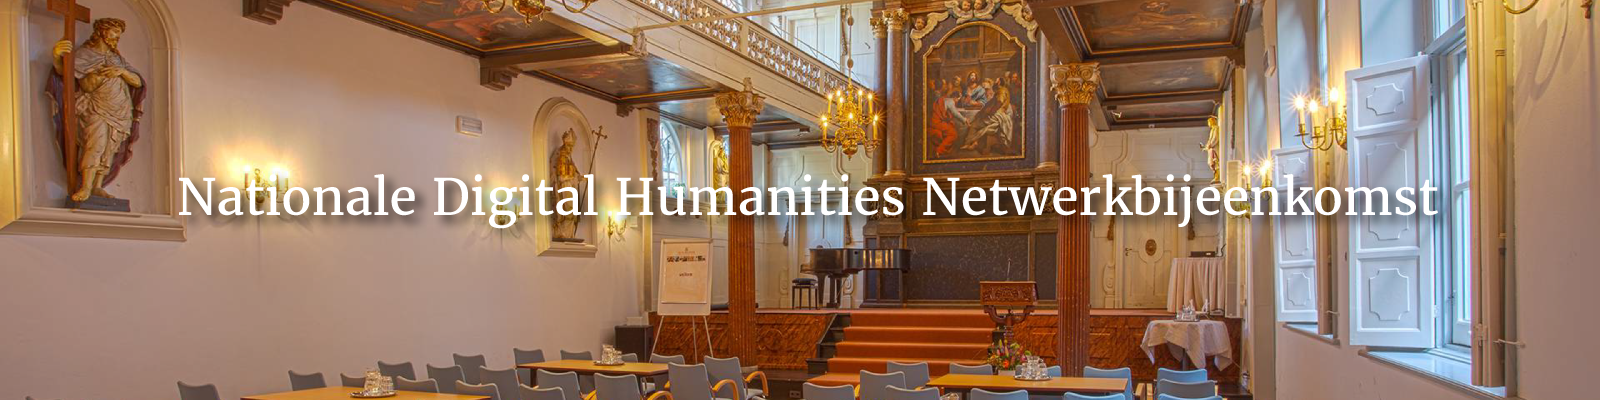 Nationale Digital Humanities Netwerkbijeenkomst